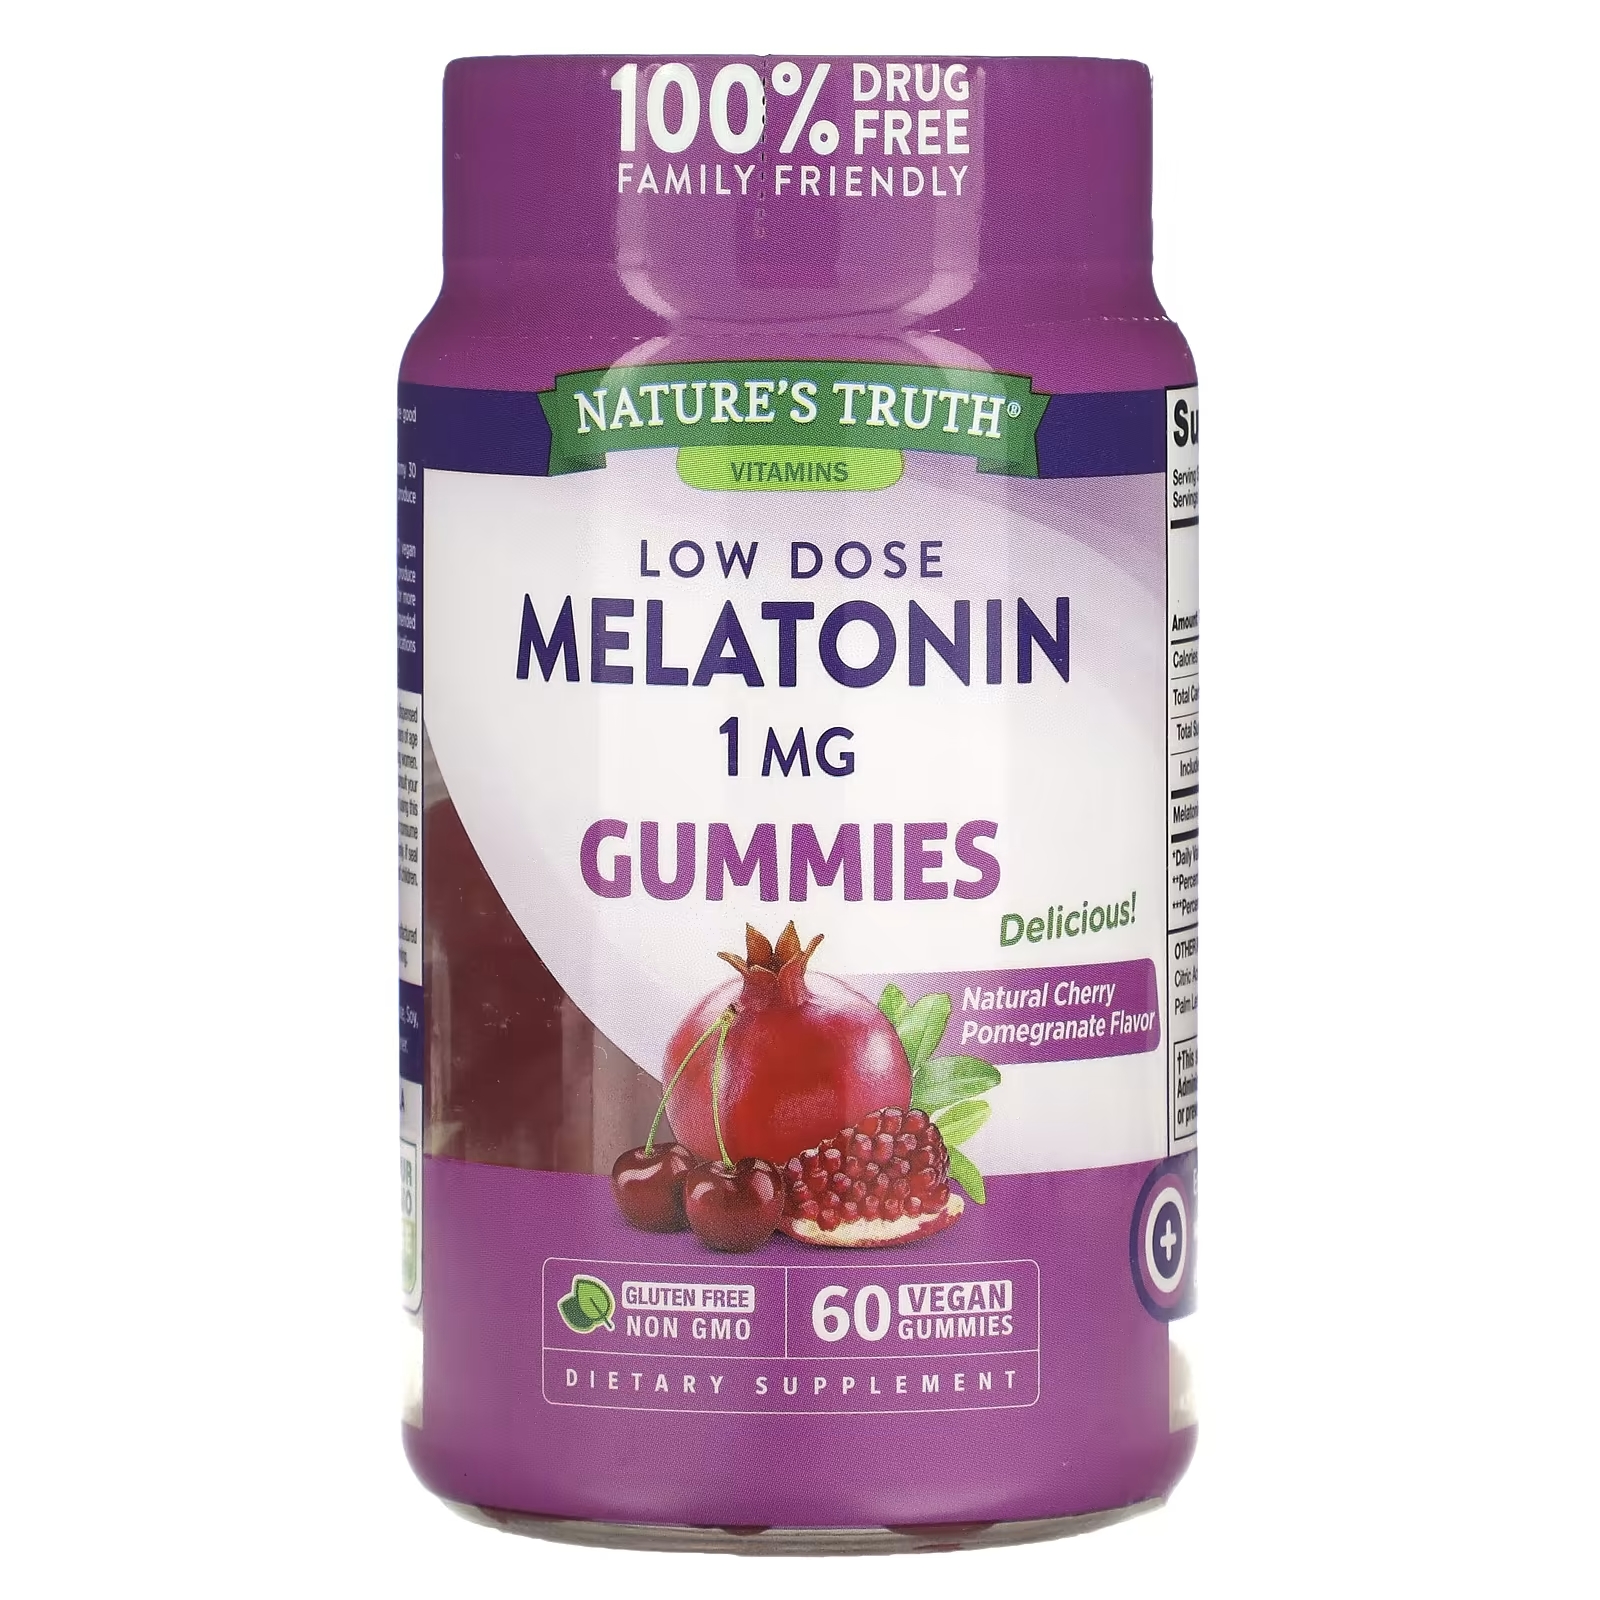 Nature's Truth Мелатонин в низкой дозе натуральный вишневый гранат 1 мг, 60 веганских мармеладок